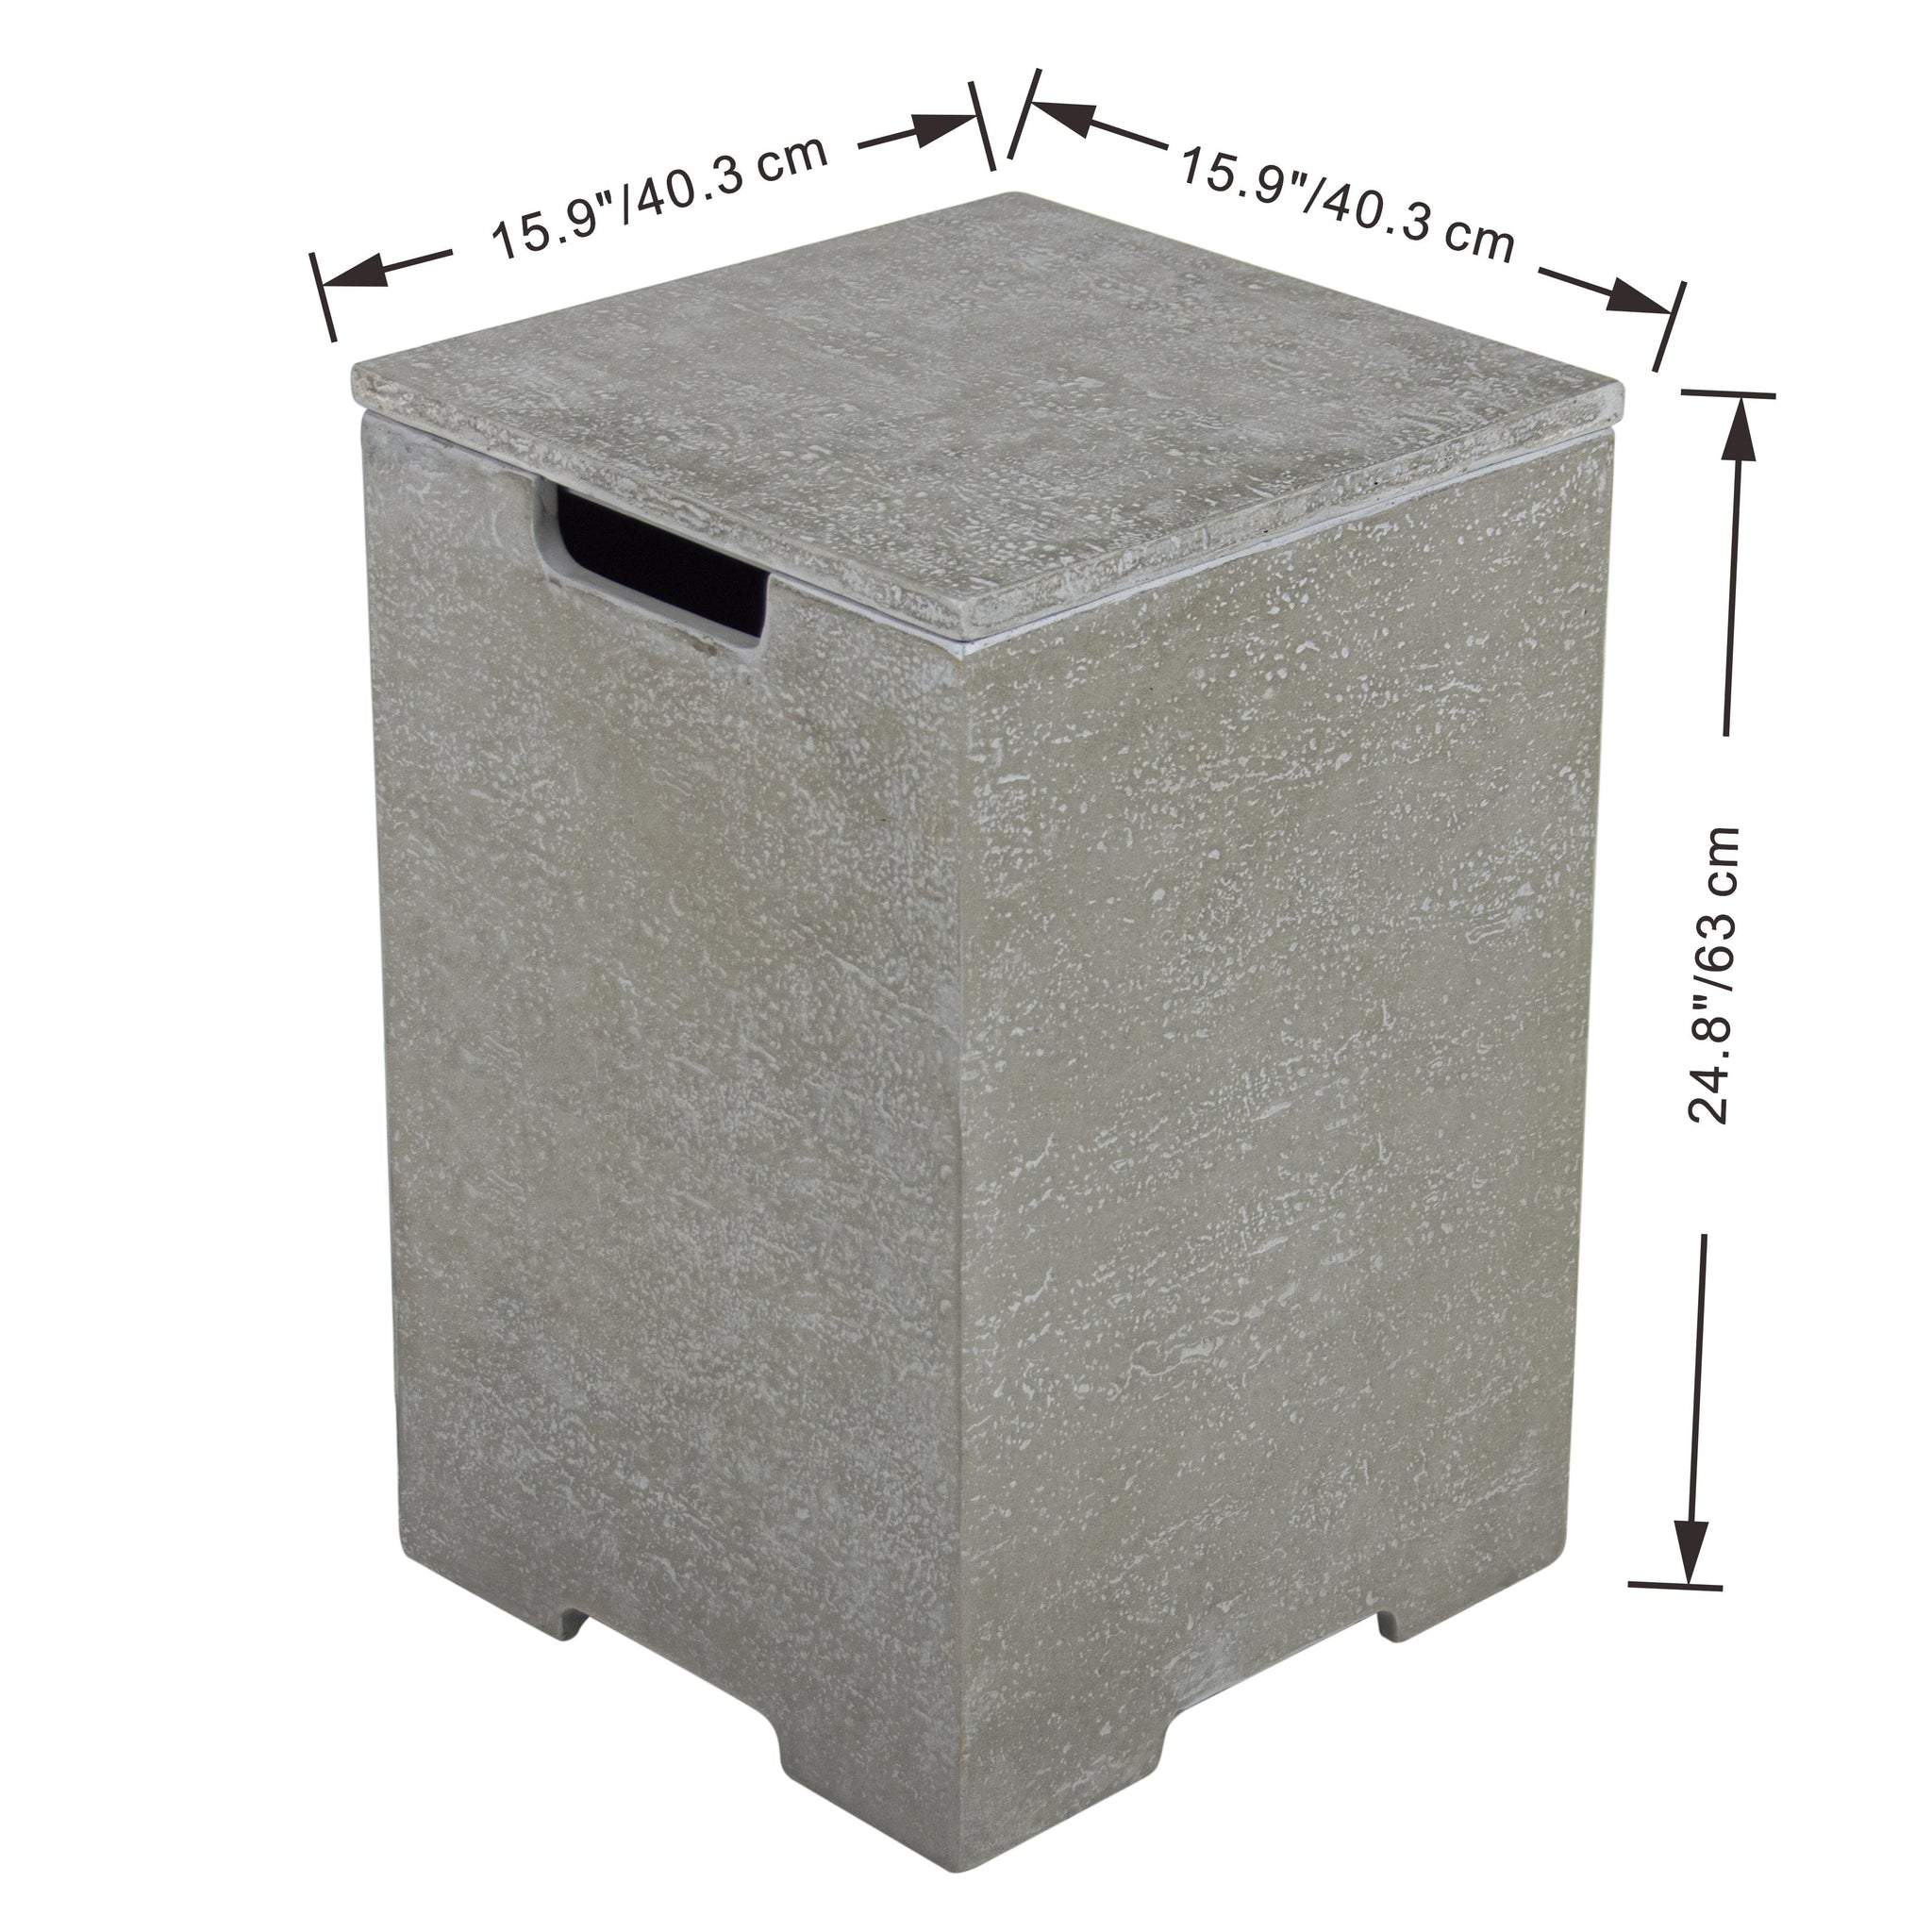 Natural Limestone Concrete Propane Tank Cover - Light Gray